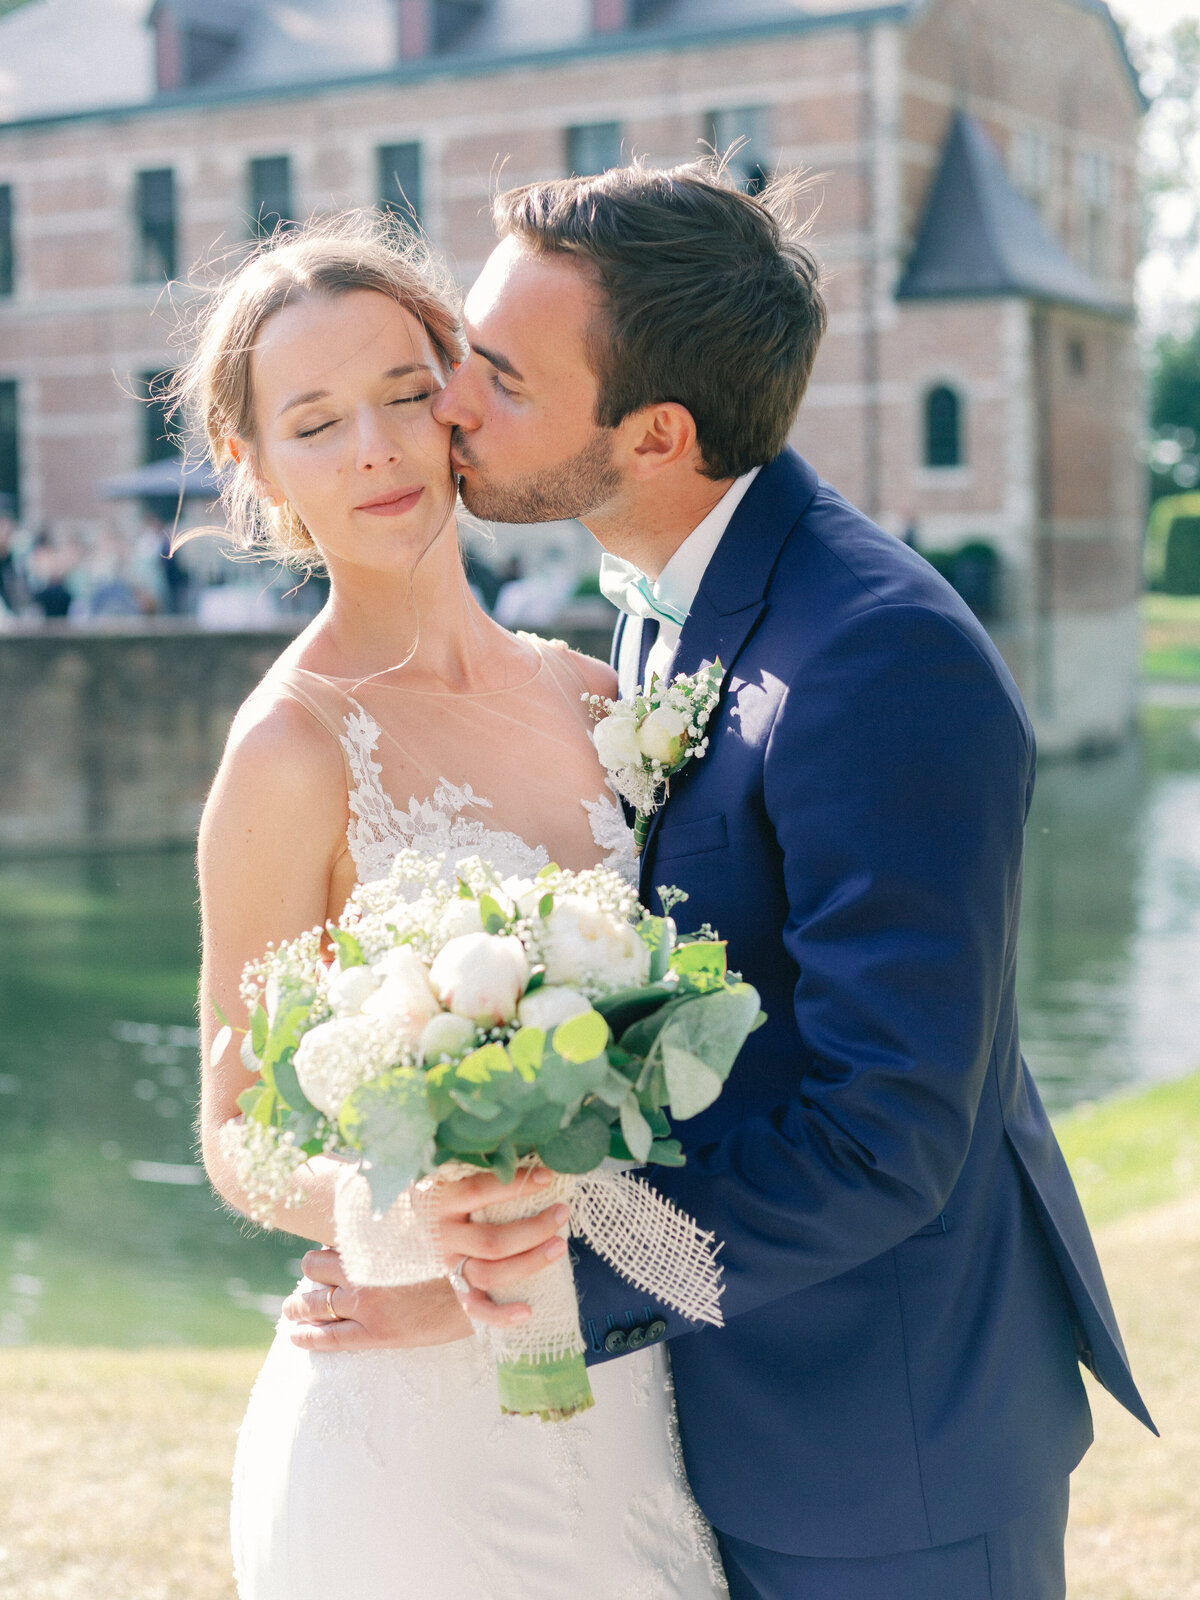 37-17062017-IMG_9675-Olivia-Poncelet-Wedding-Photographer-Belgium-LJ-WEB-150